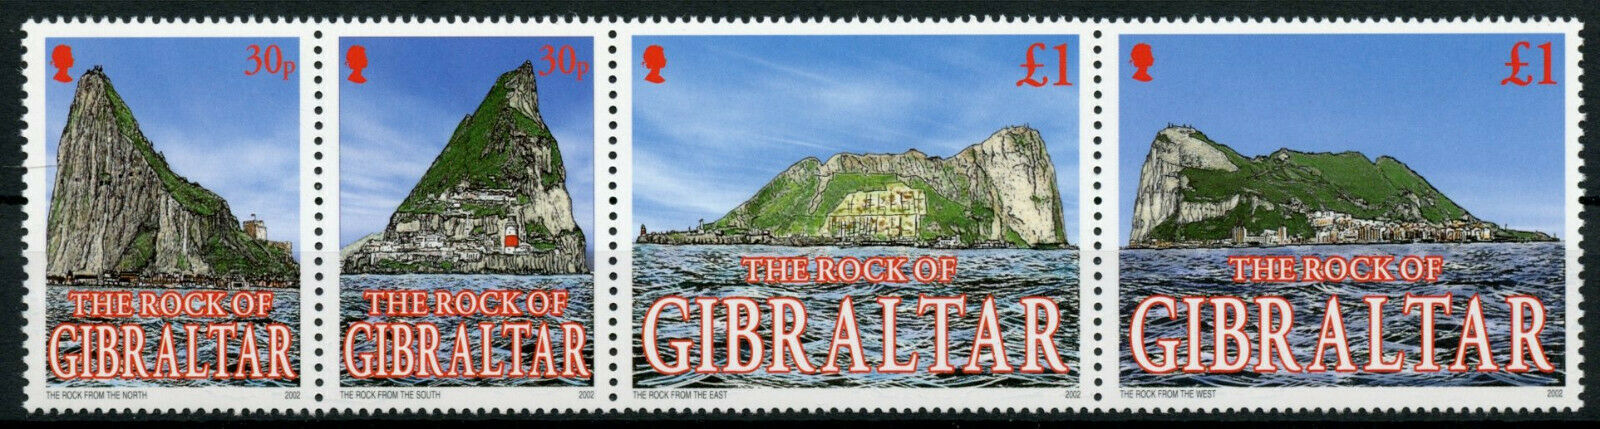 Gibraltar 2002 MNH Landscapes Stamps View of Rock of Gibraltar Tourism 4v Strip